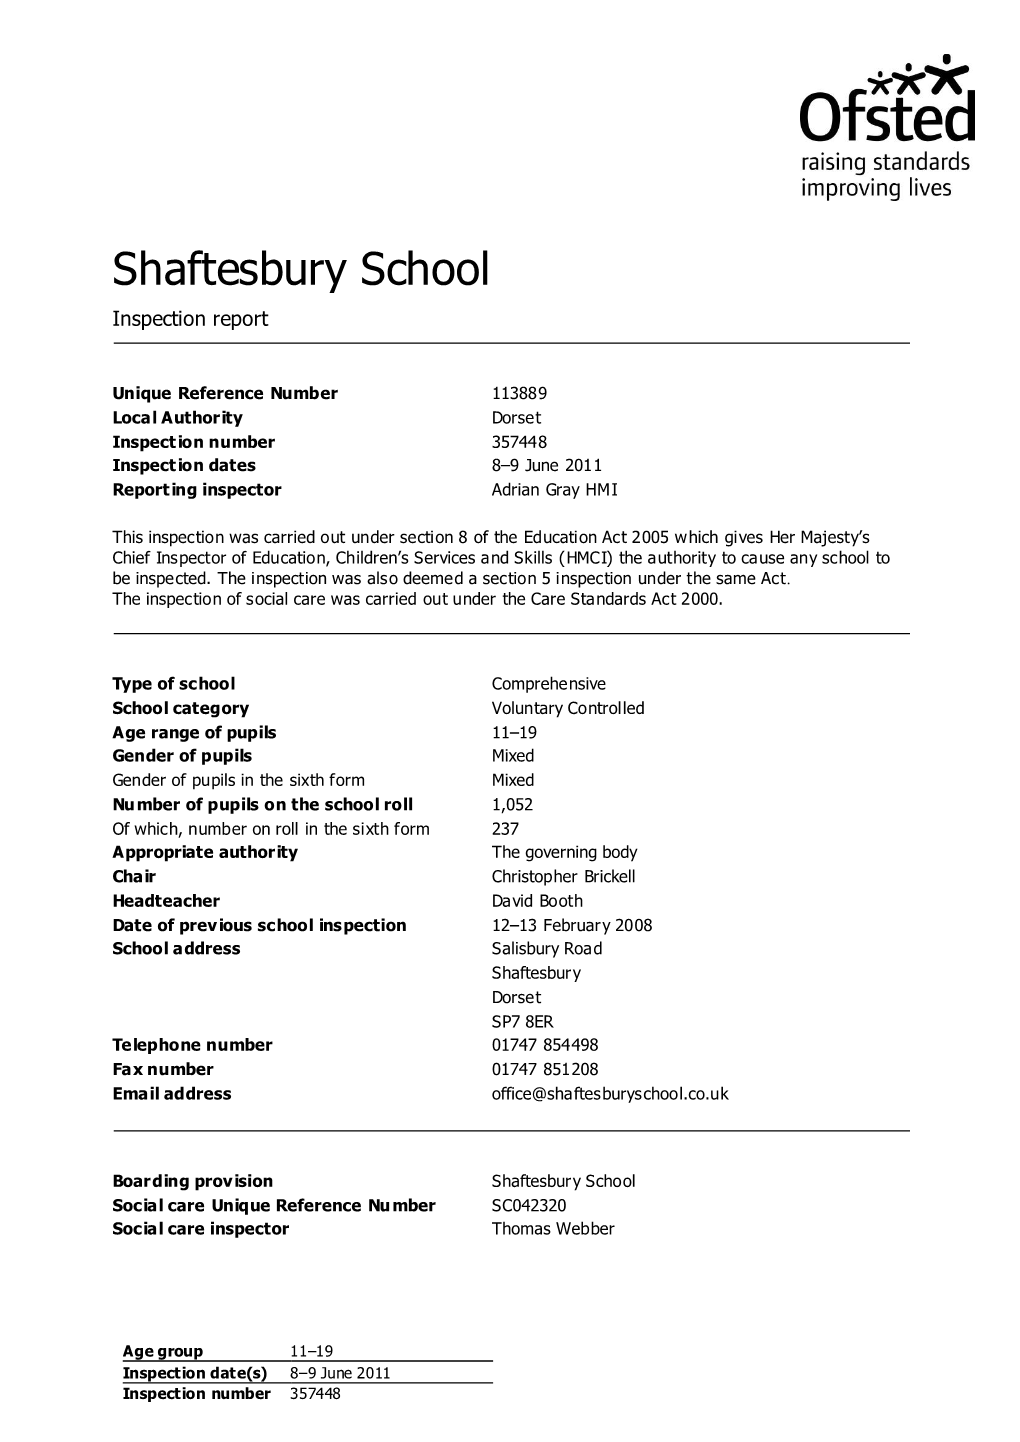 Shaftesbury School Inspection Report